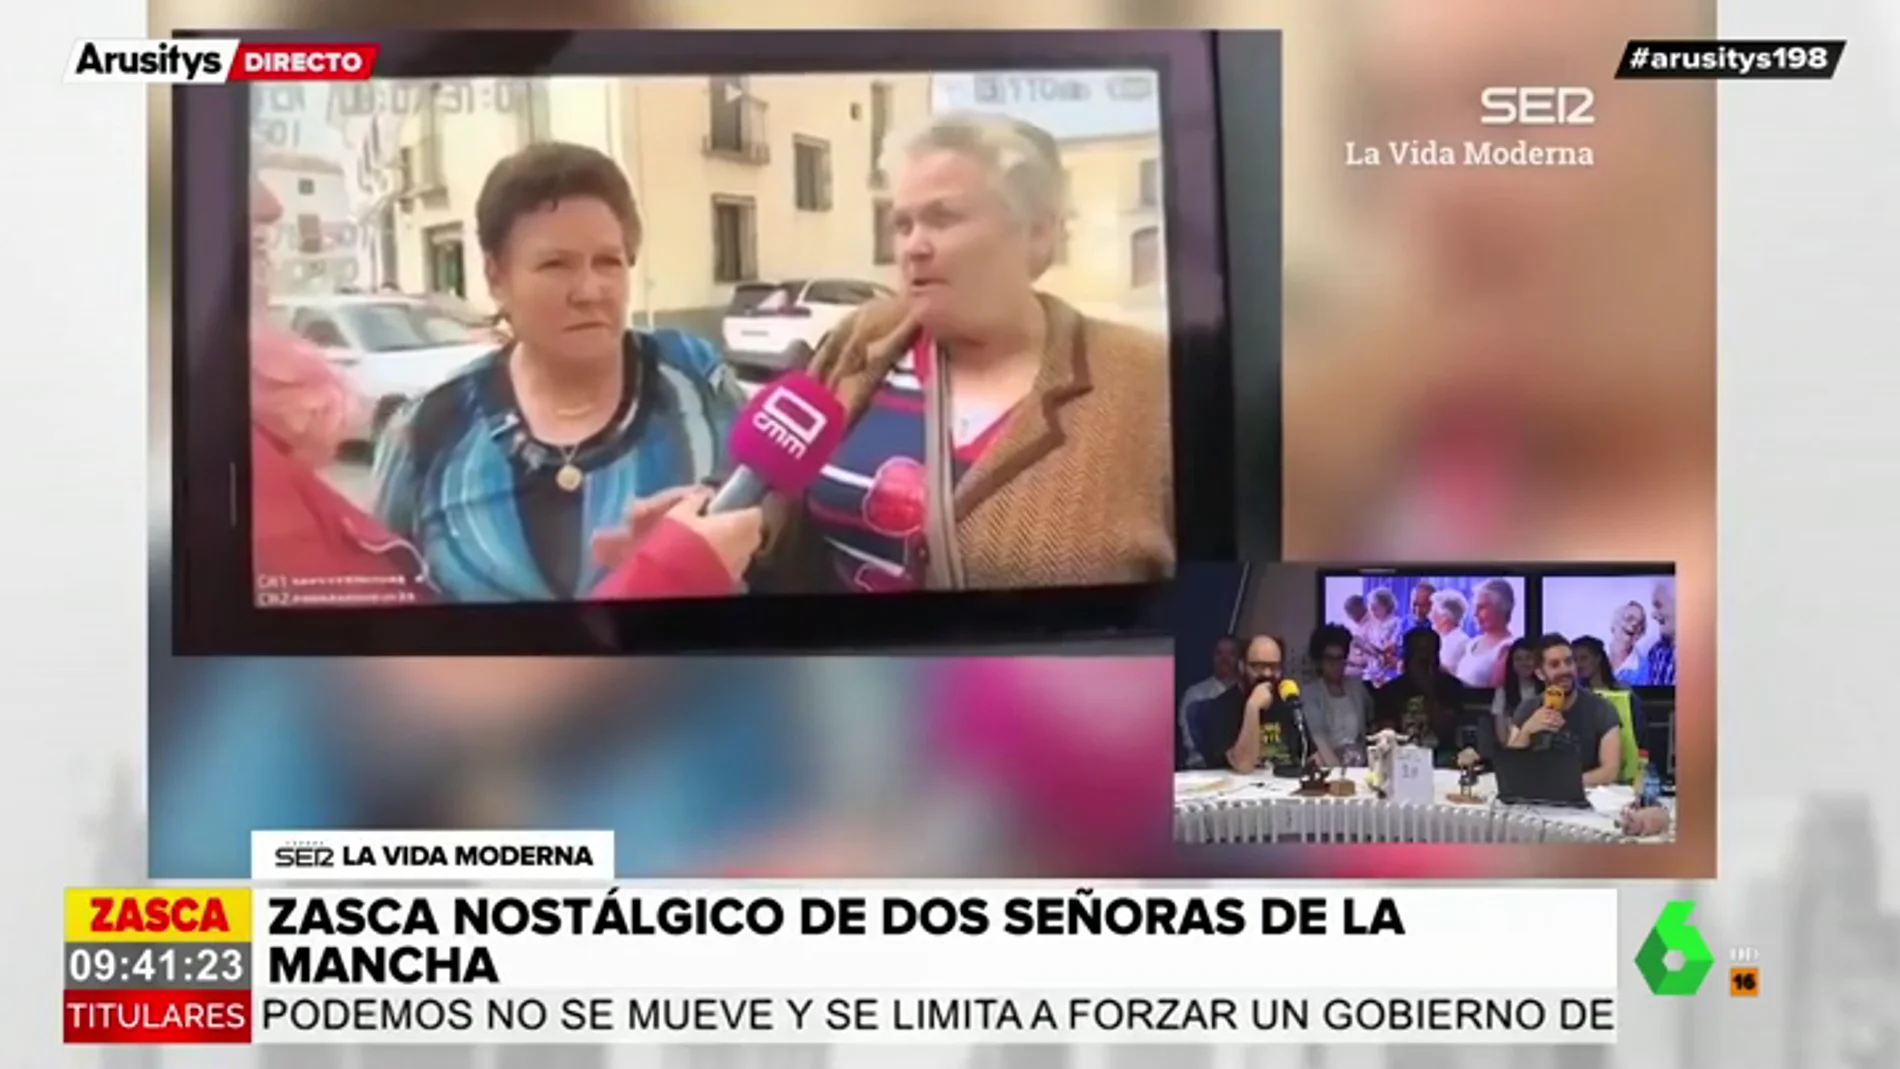 Las polémicas declaraciones franquistas de dos mujeres